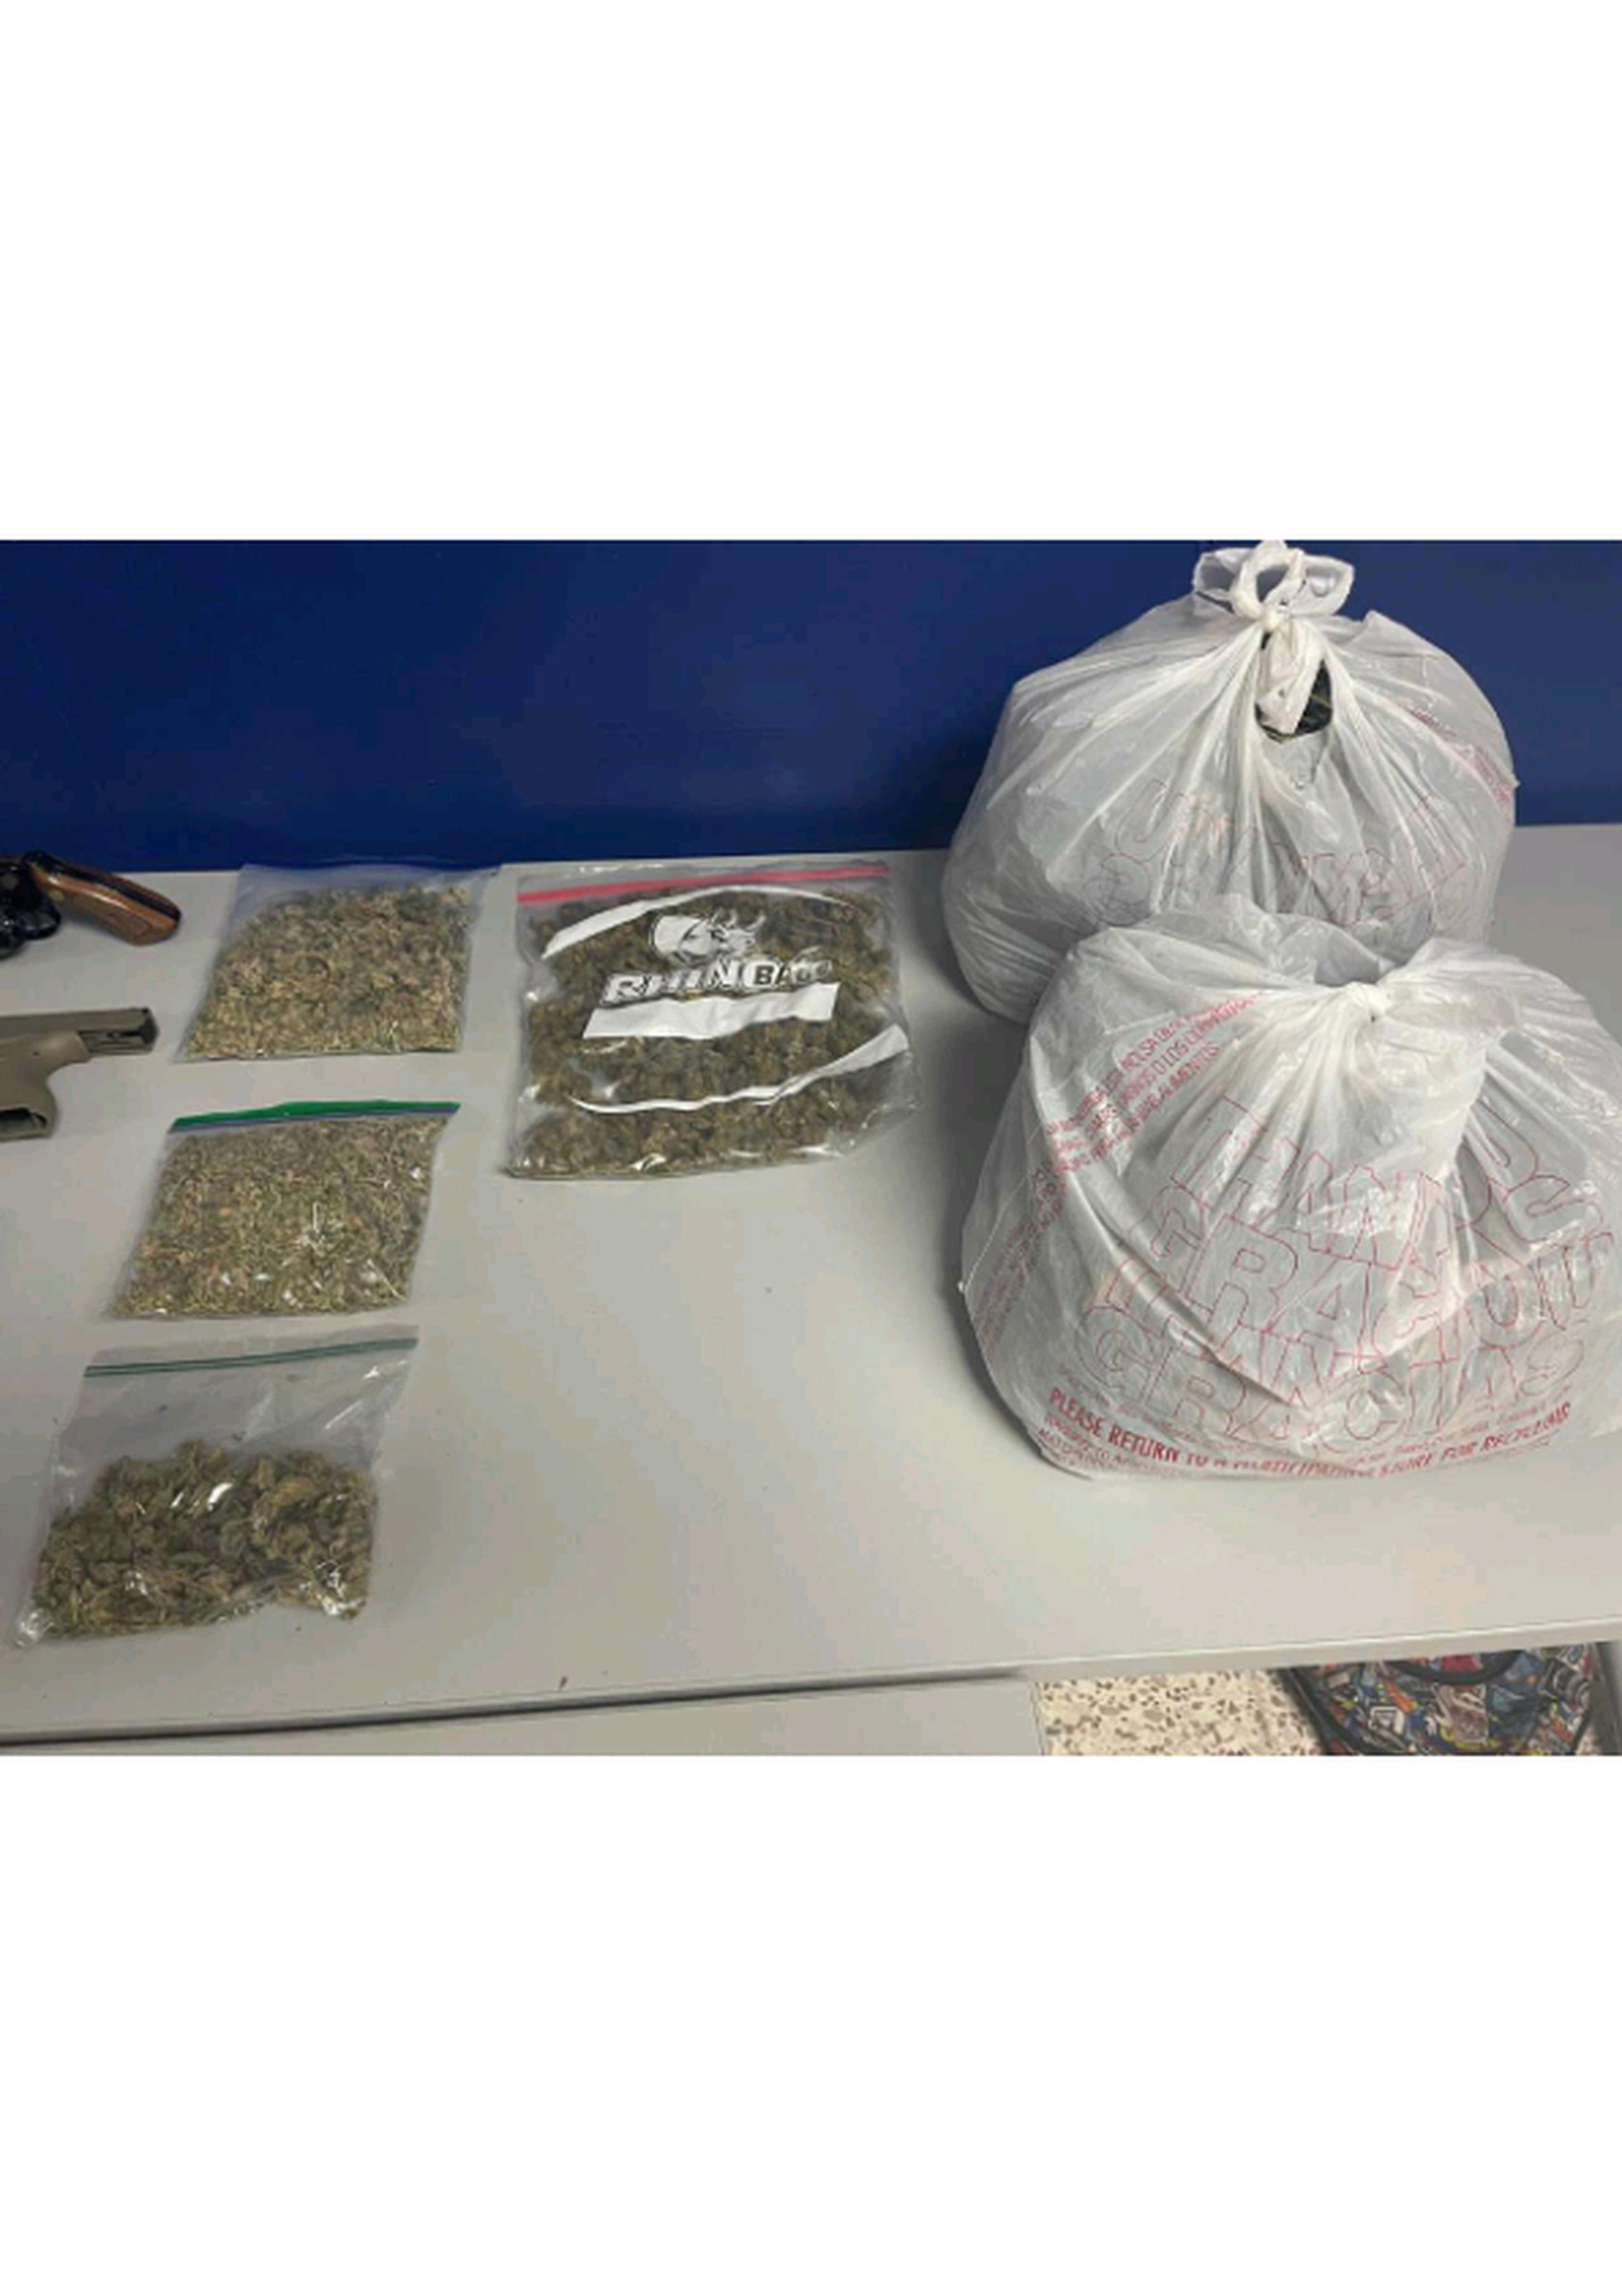 Las bolsas con picadura de marihuana fueron ocupadas en un allanamiento en el barrio Sabana Seca, en Toa Baja.